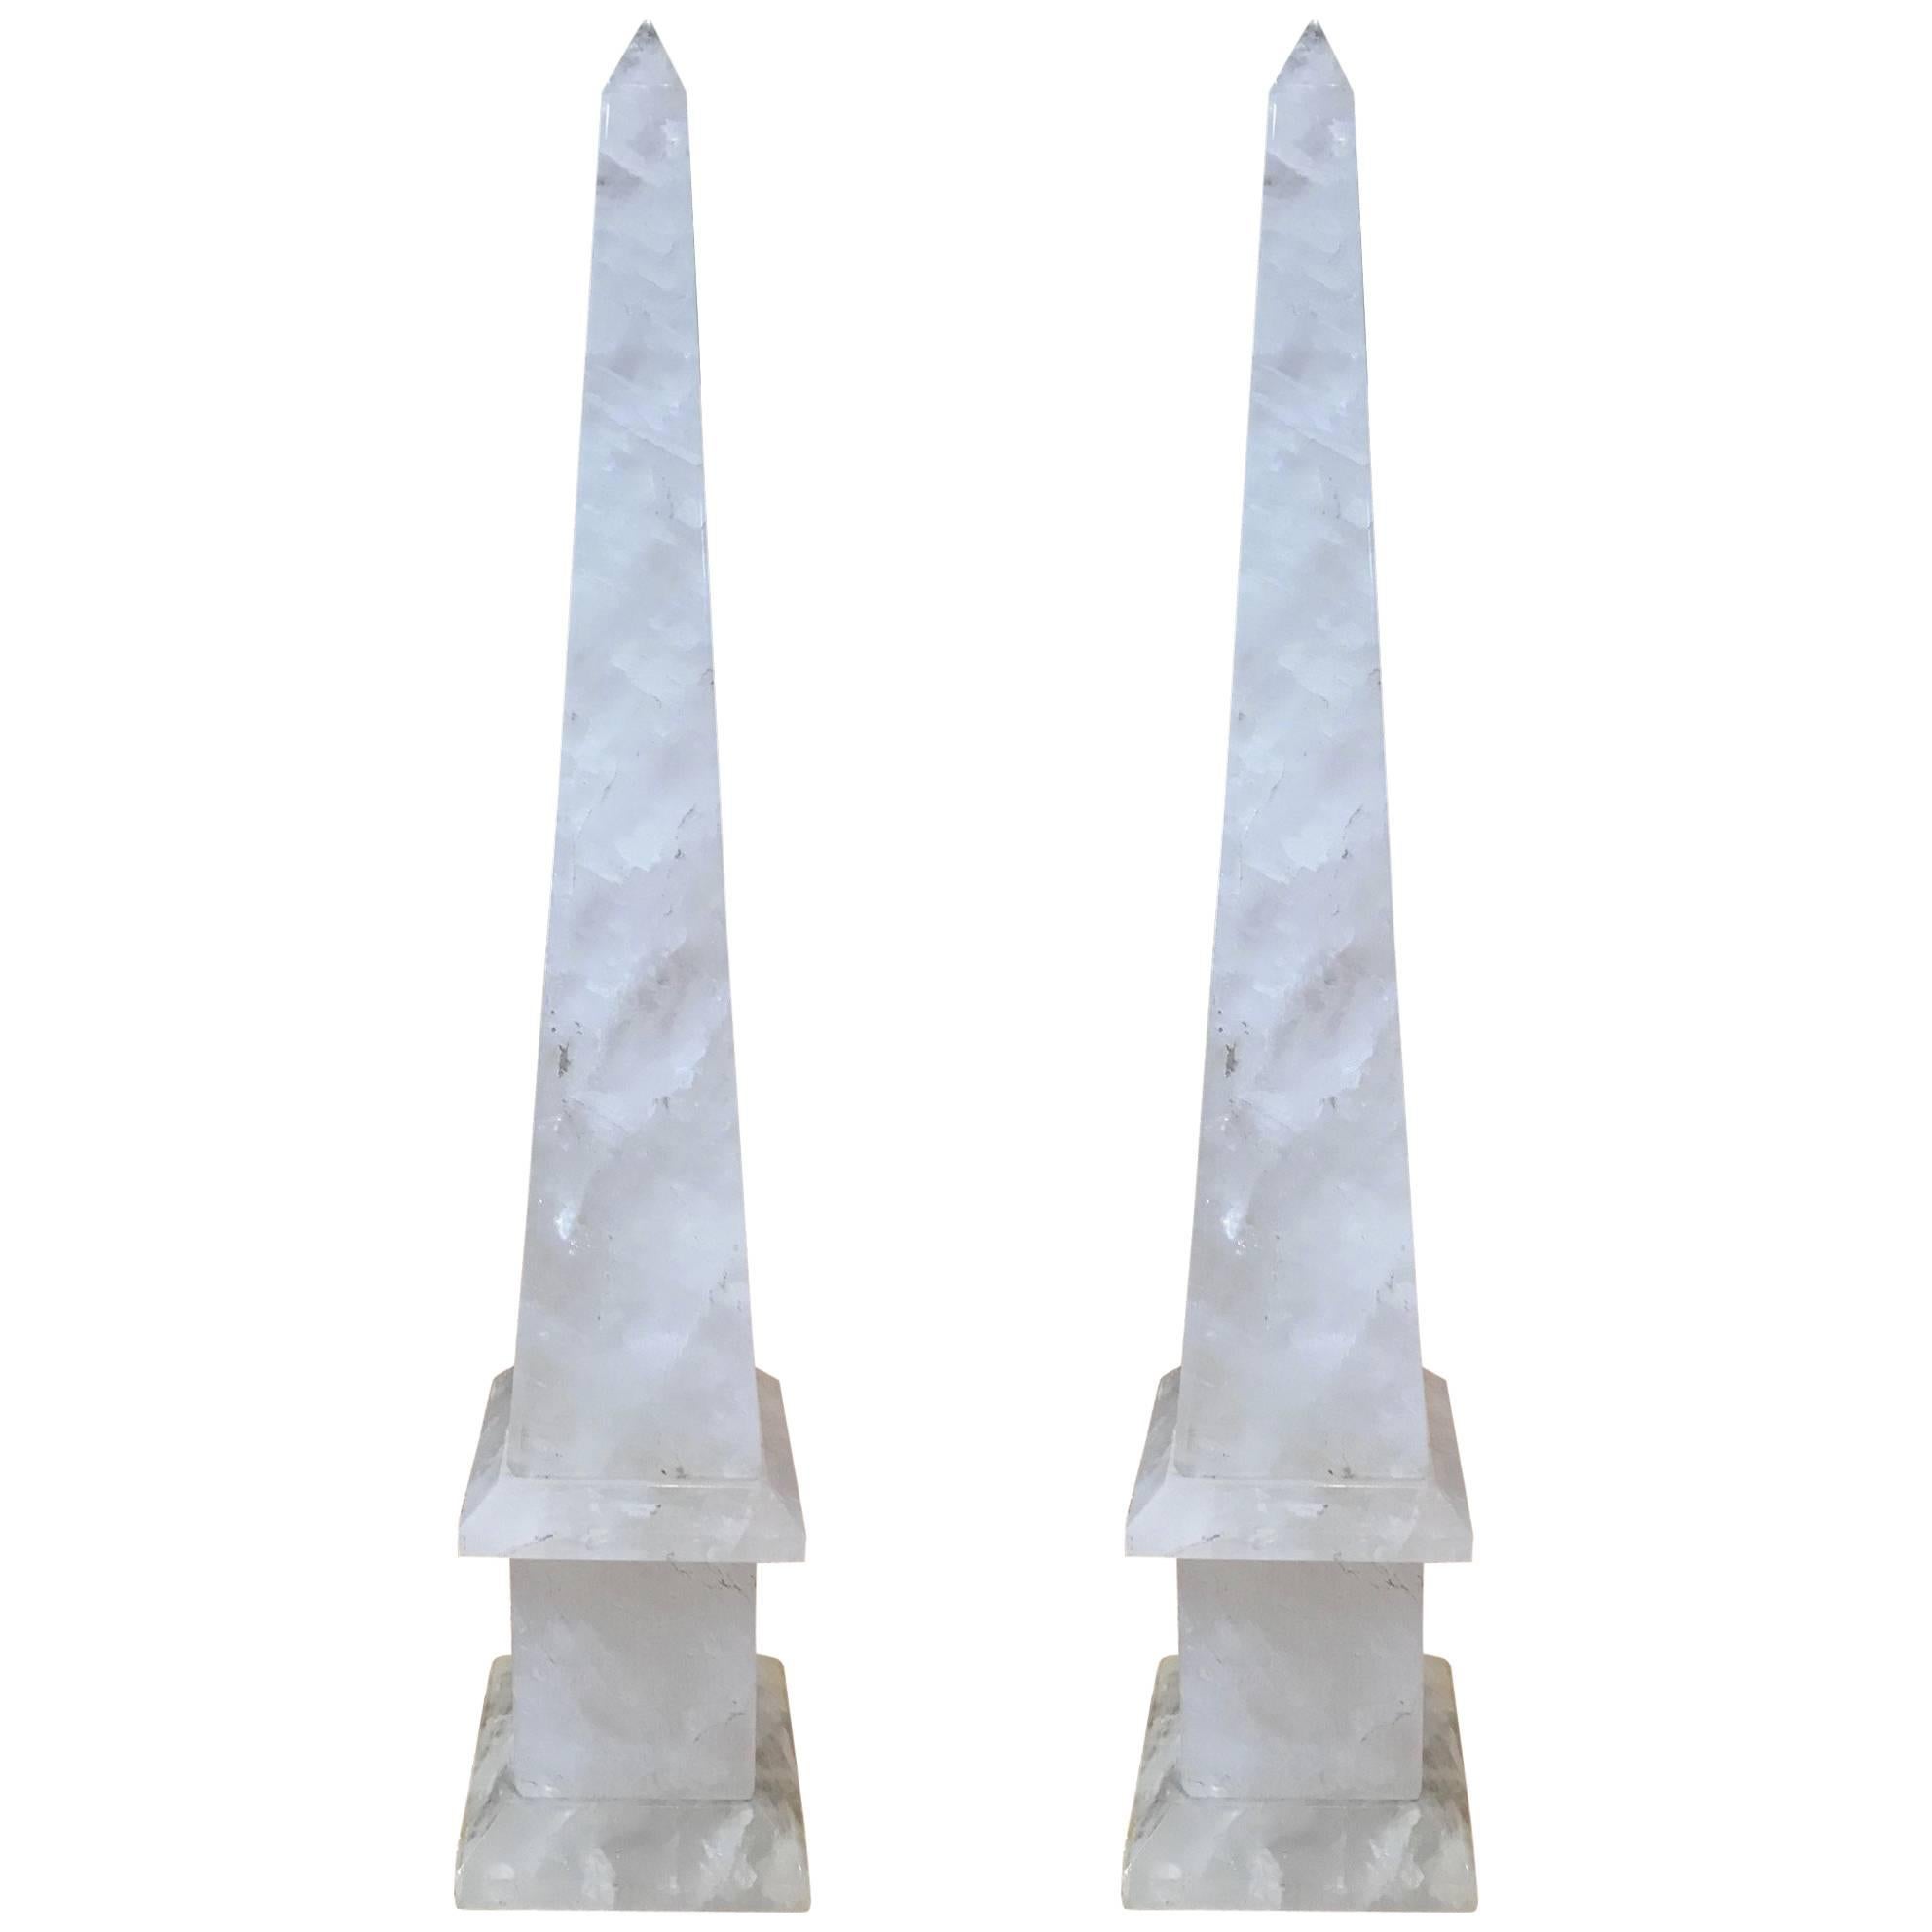 Pair of 21" Rock Crystal Obelisks